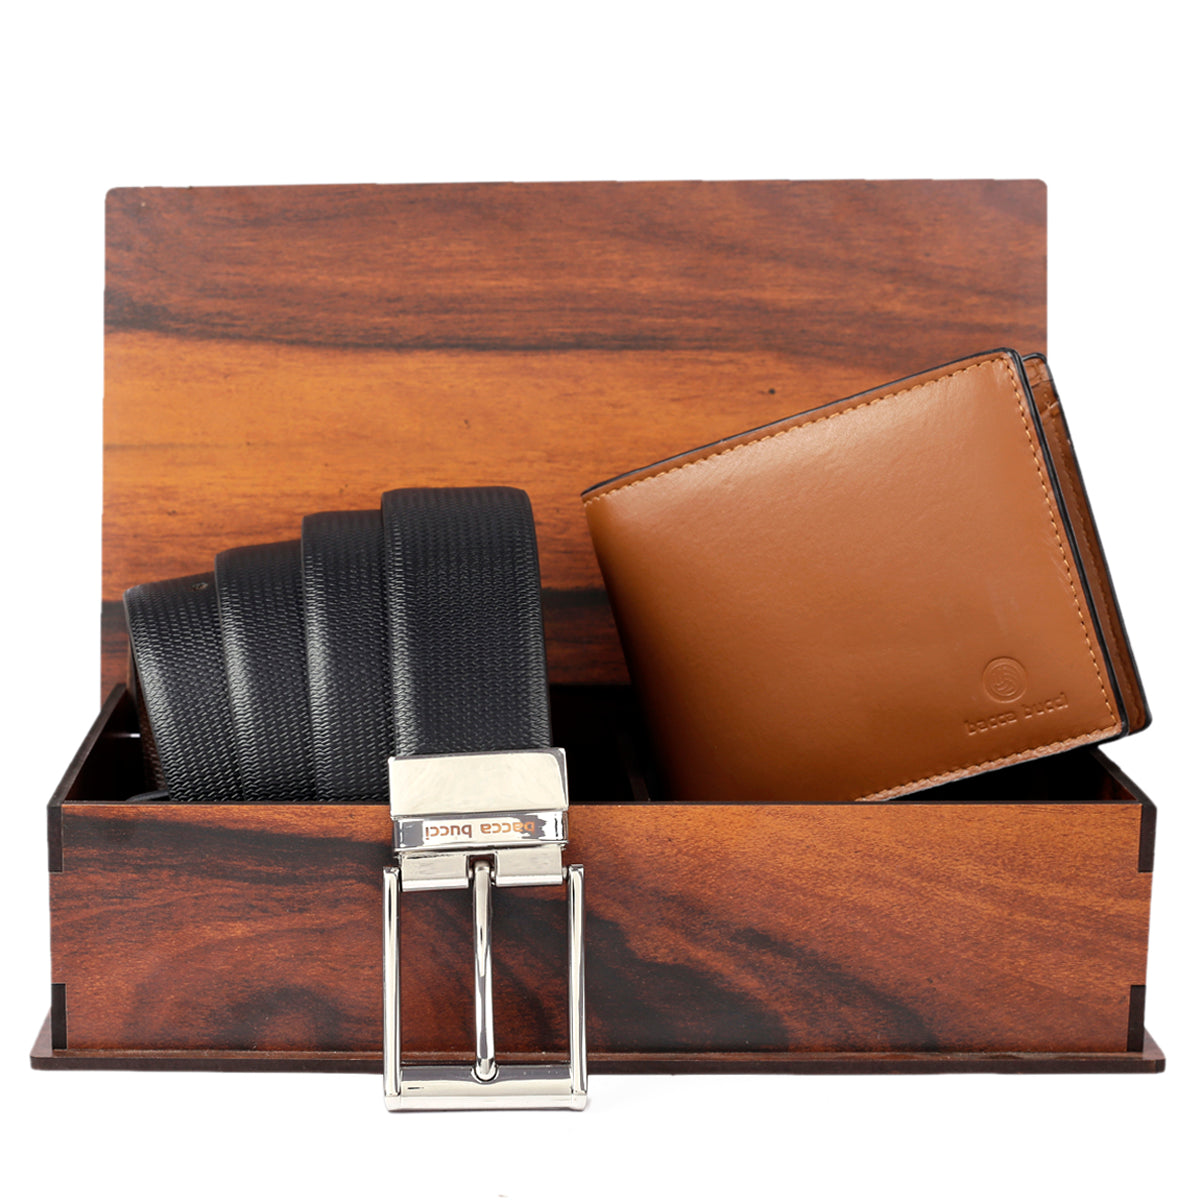 Designer Leather Wallets For Men